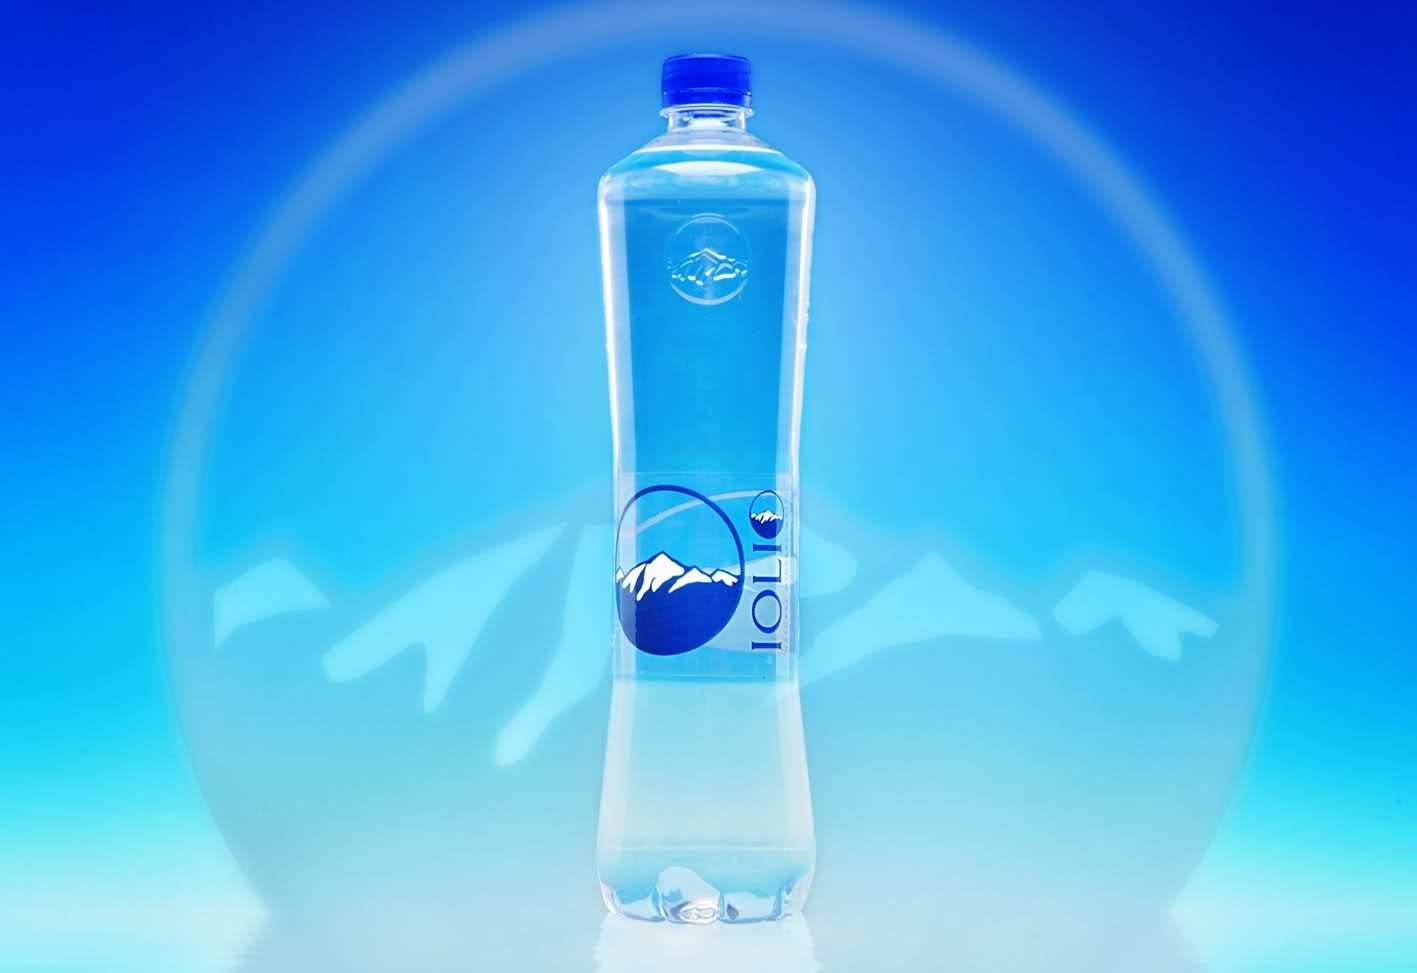 Бесплатная питьевая вода. Питьевая вода. Логотип питьевой воды. Минеральные воды. Питьевая вода бренды.